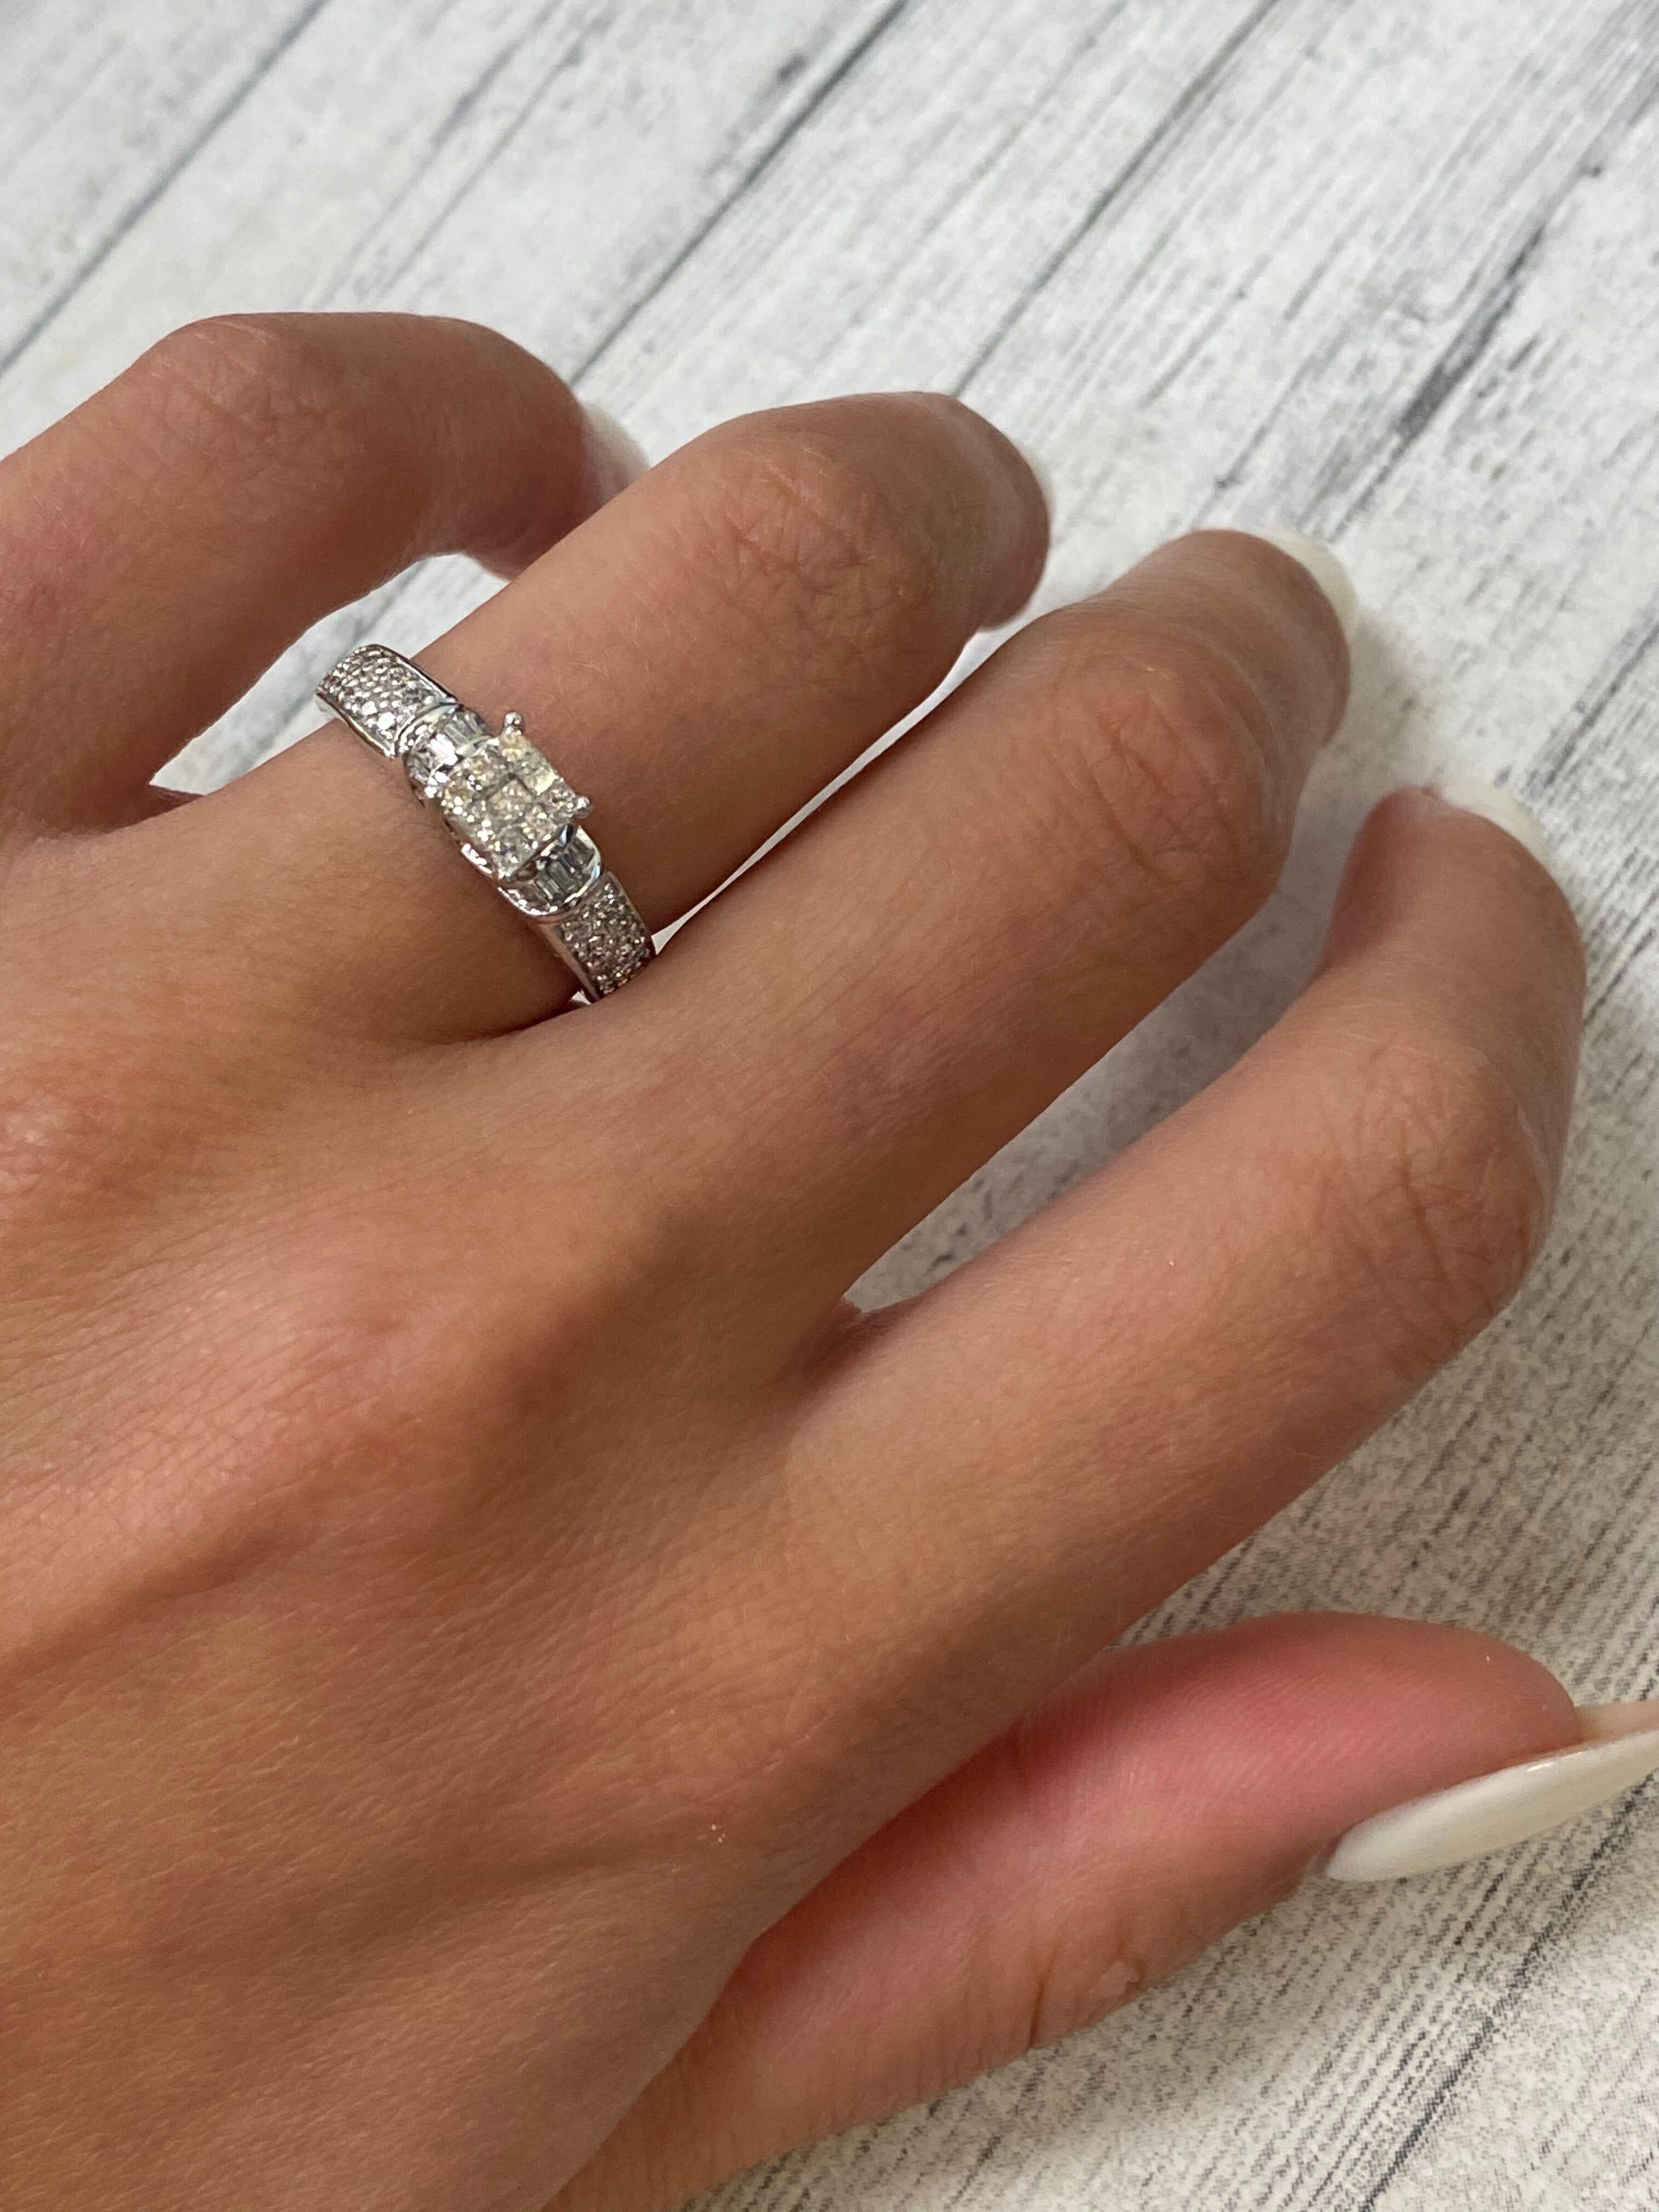 Rachel Koen Diamond Engagement Ring 14K White Gold 0.55cttw For Sale 1